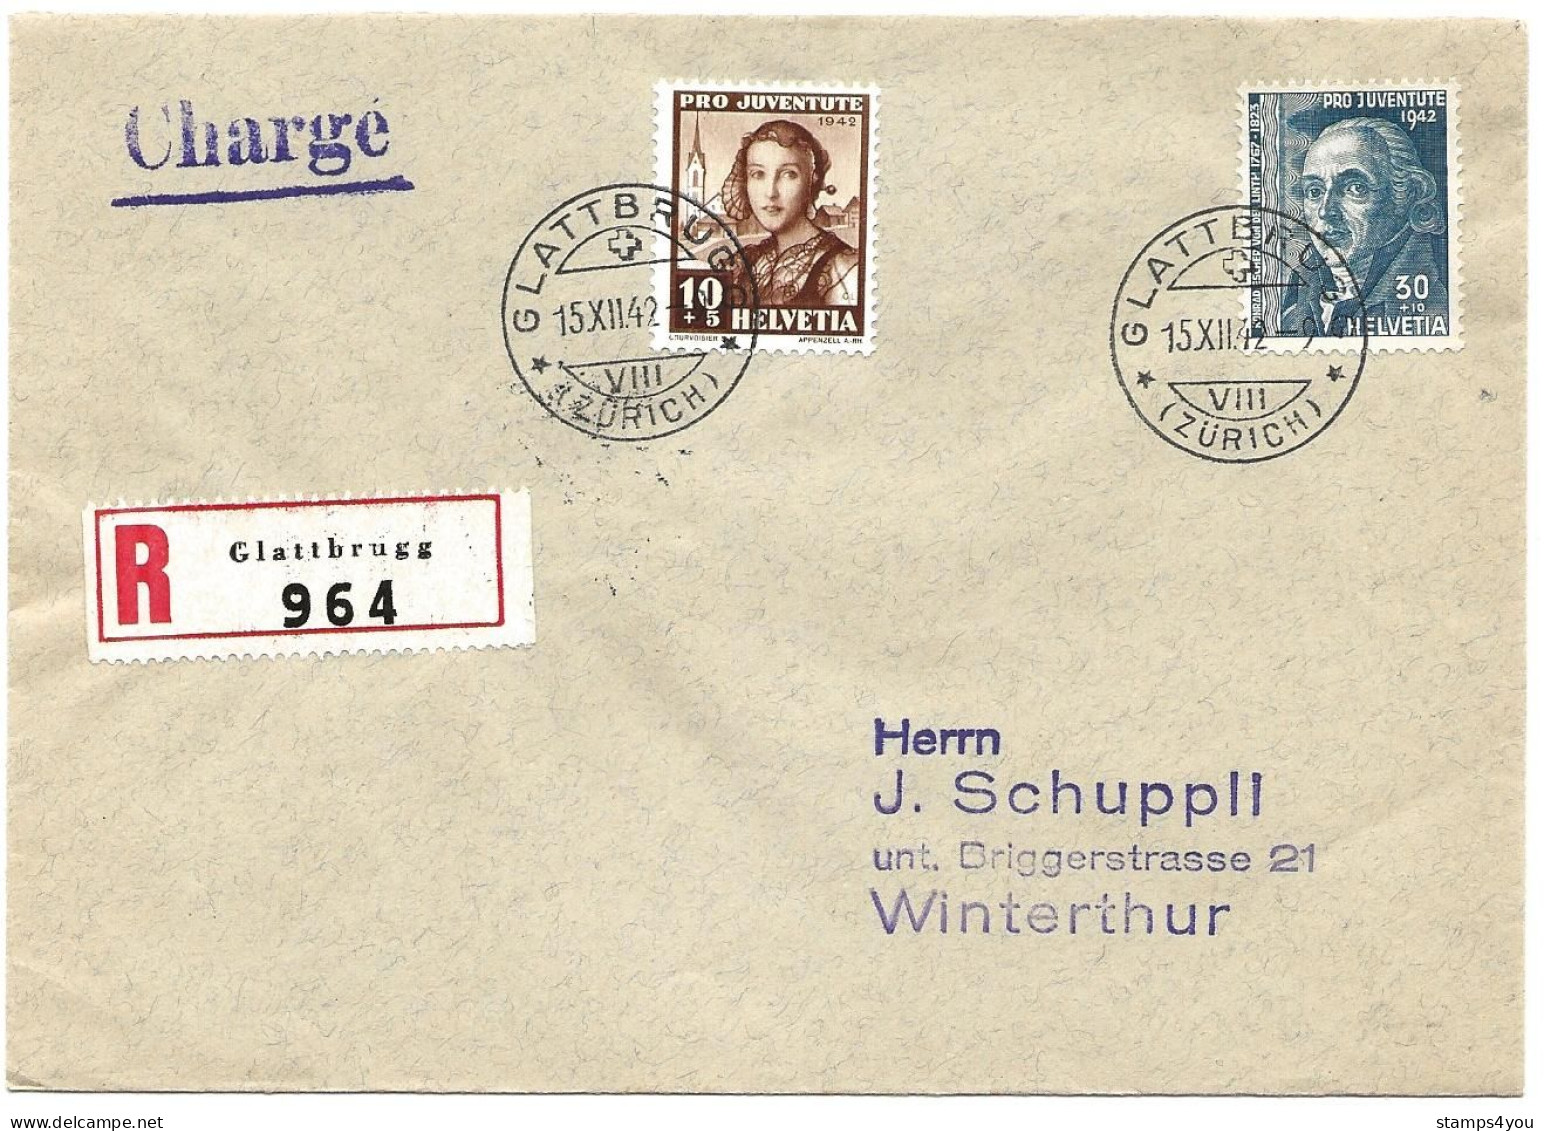 100 - 12 - Enveloppe Recommandée Envoyée De Glattbrugg 1942 - Timbres Pro Juventute - Briefe U. Dokumente